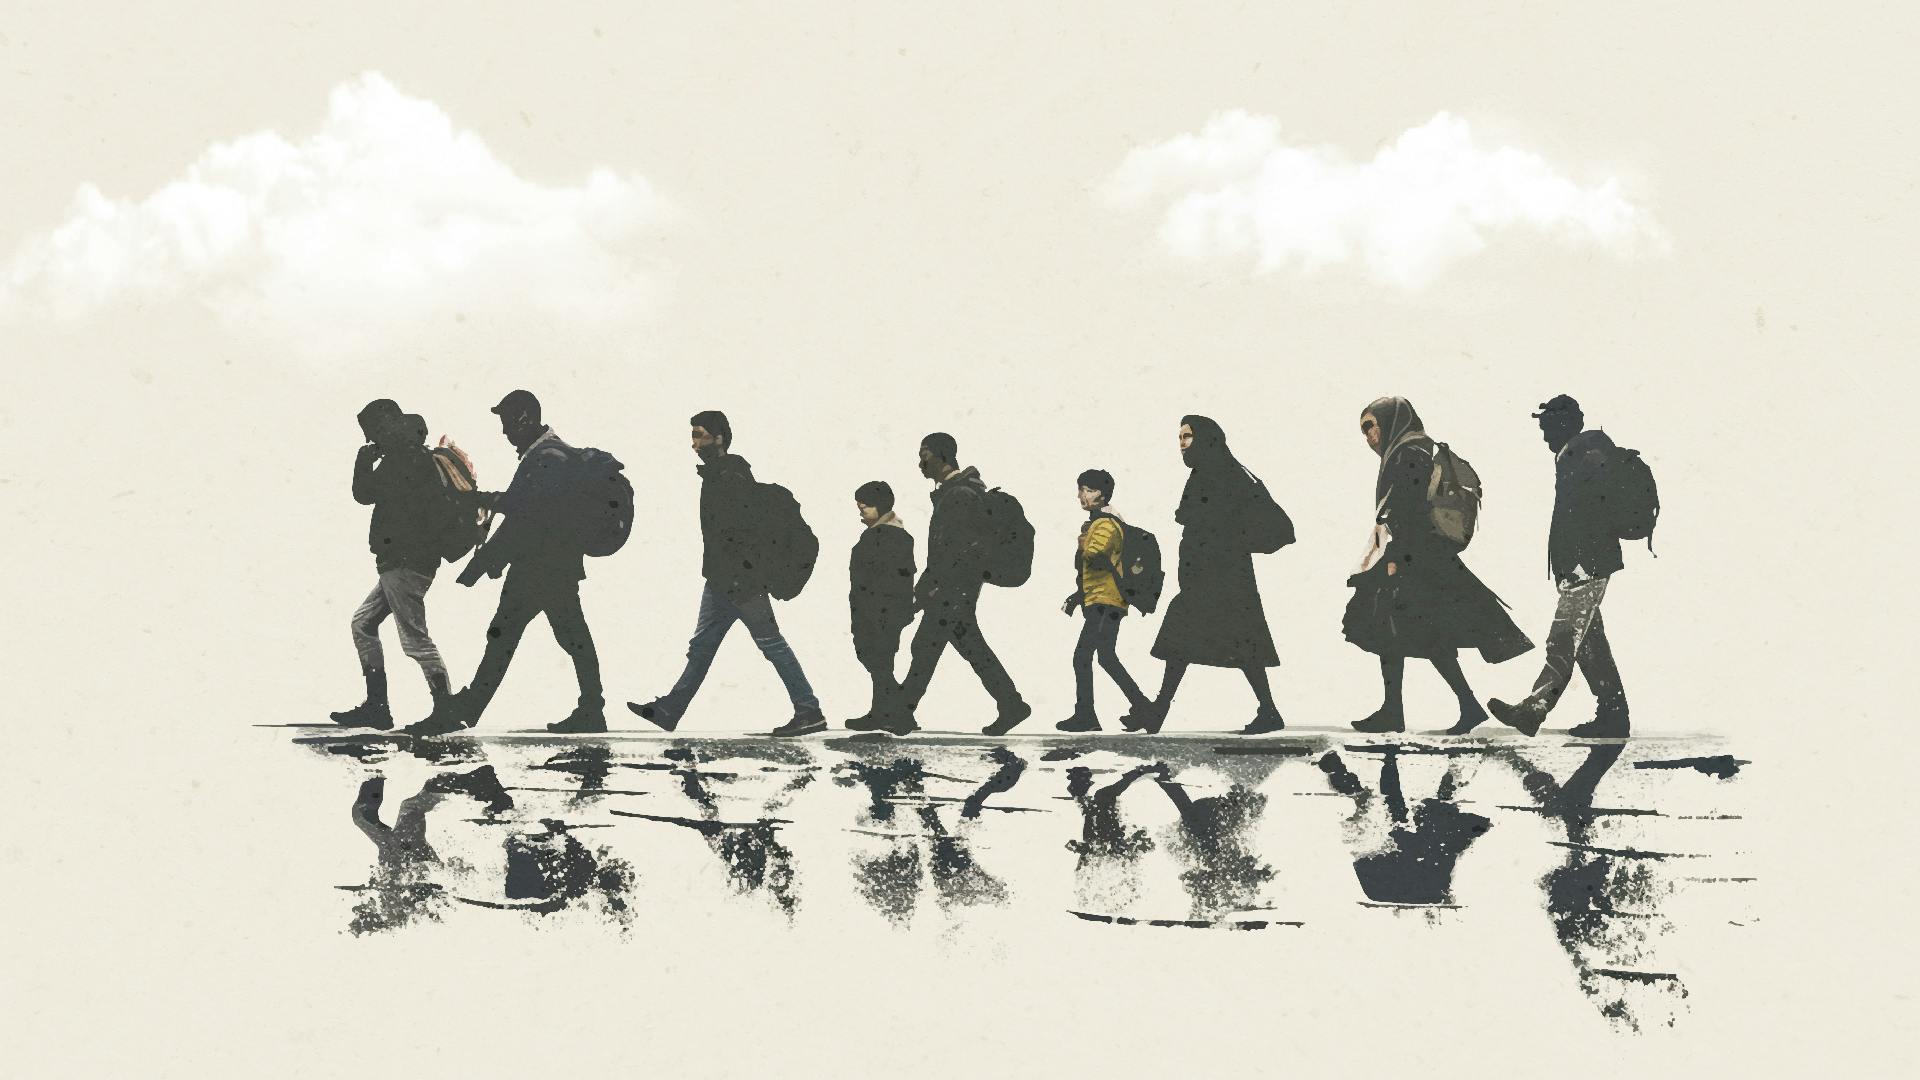 Illustratie van een groep lopende mensen op de vlucht met een zachtgele achtergrond